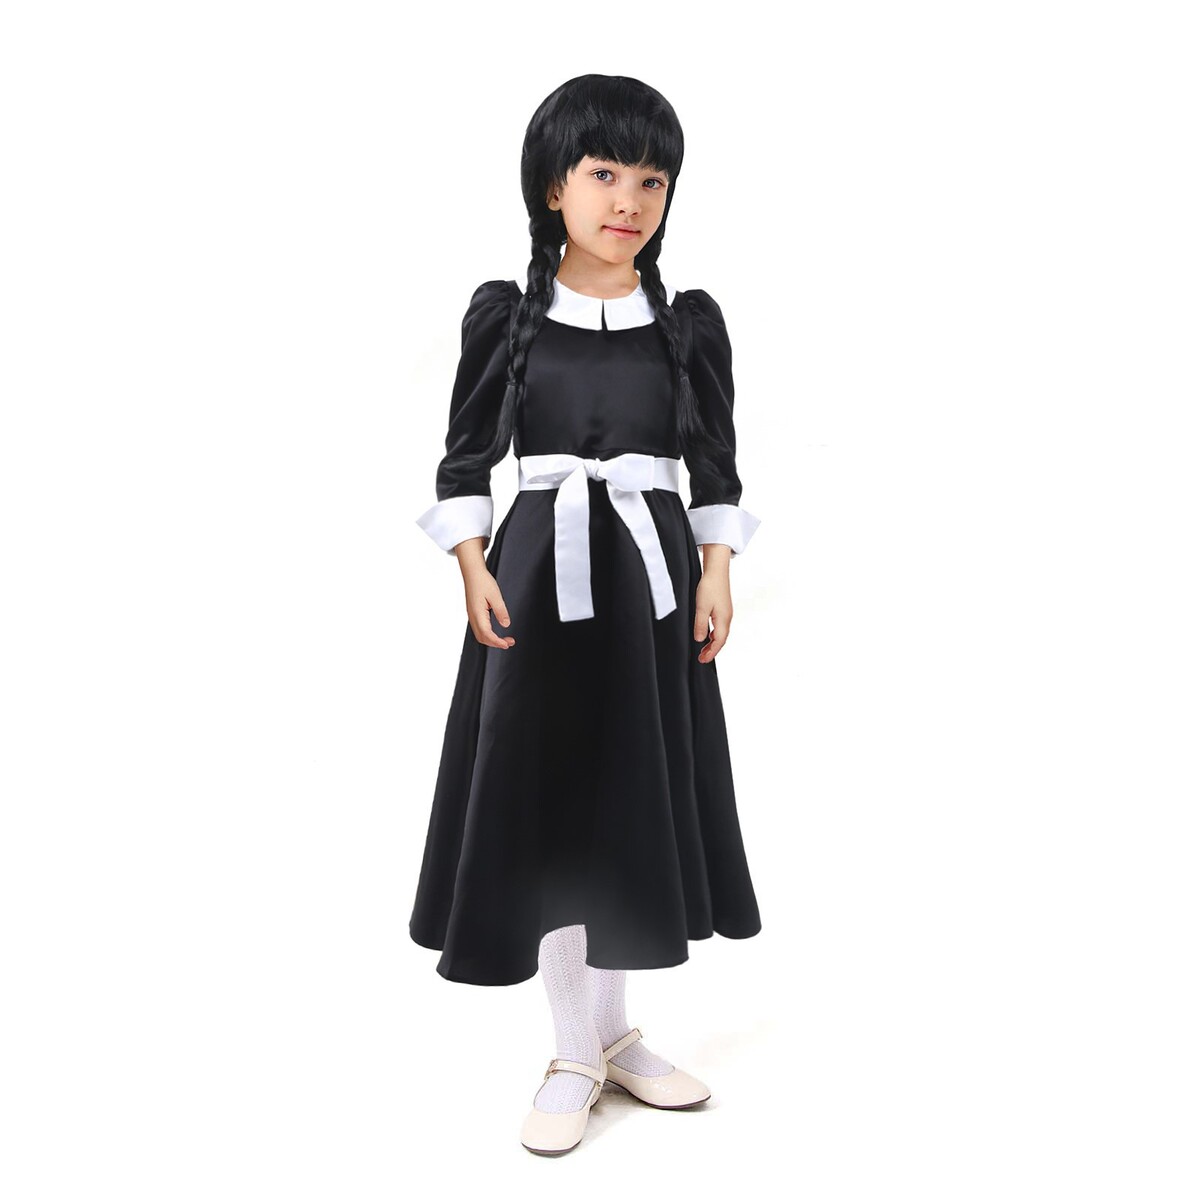 Карнавальное черное платье с белым воротником,атлас,п/э,р-р34,р134 платье с воротником holivin карусель бежевое